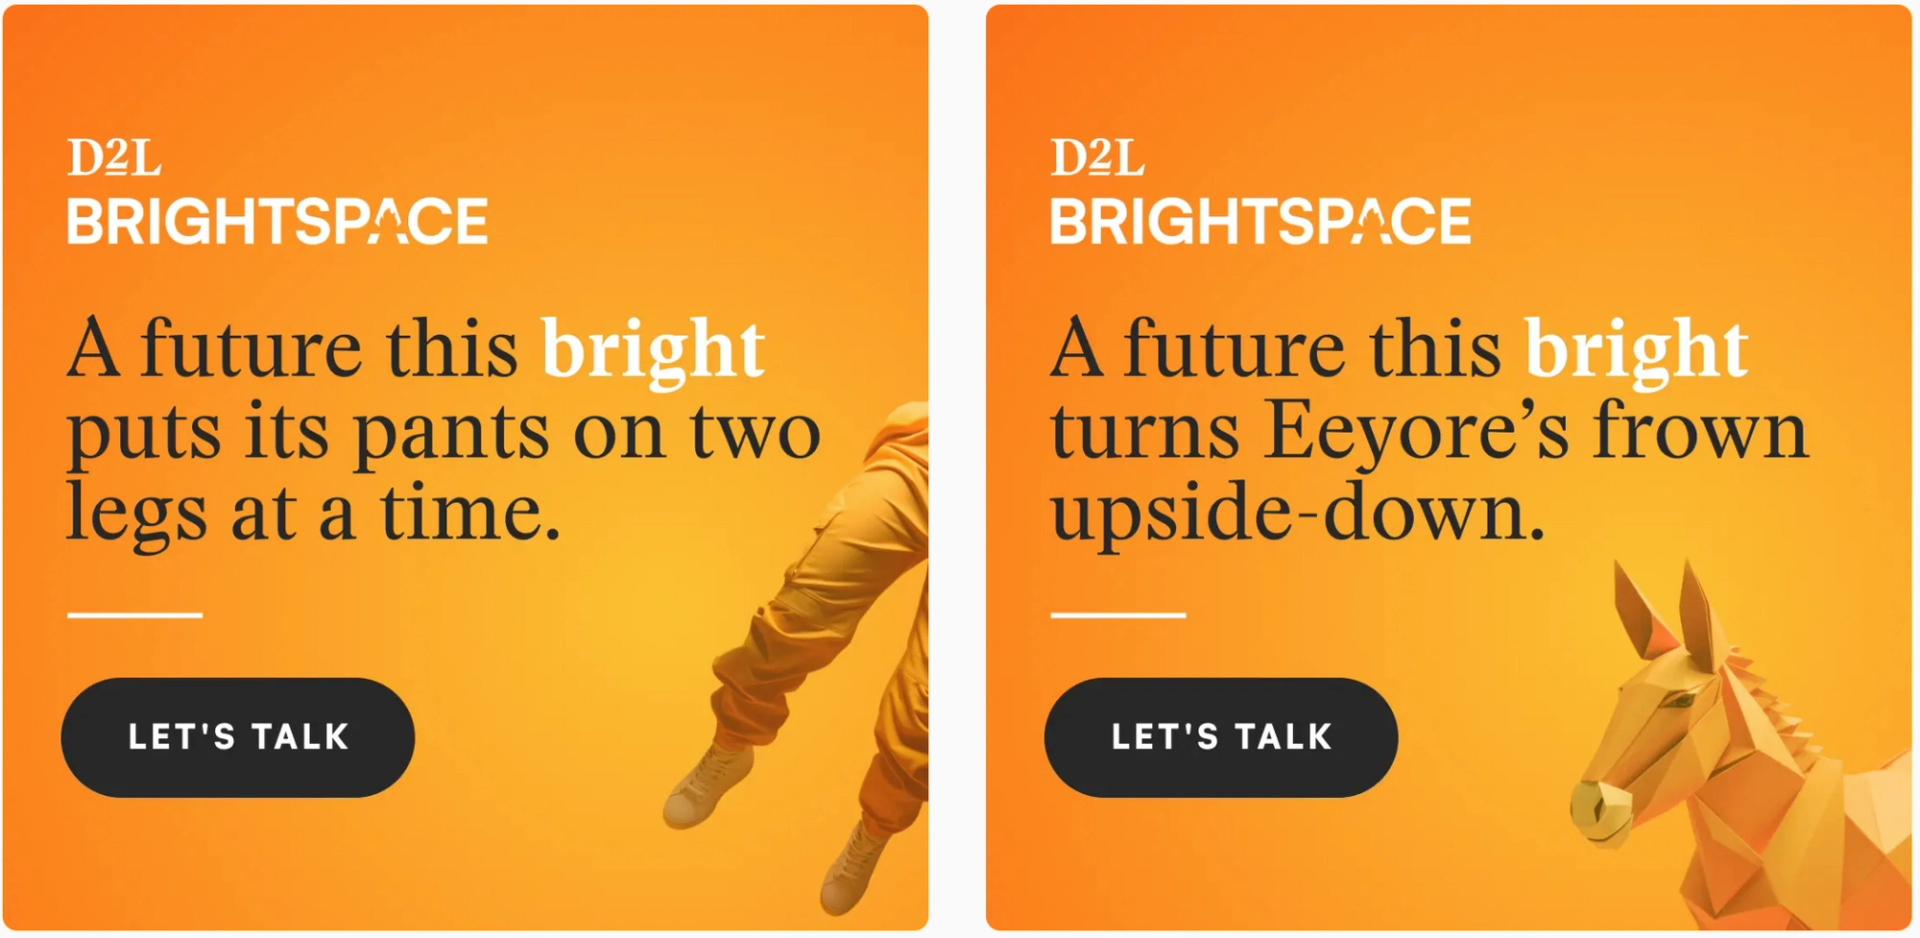 D2L Brightspace ads